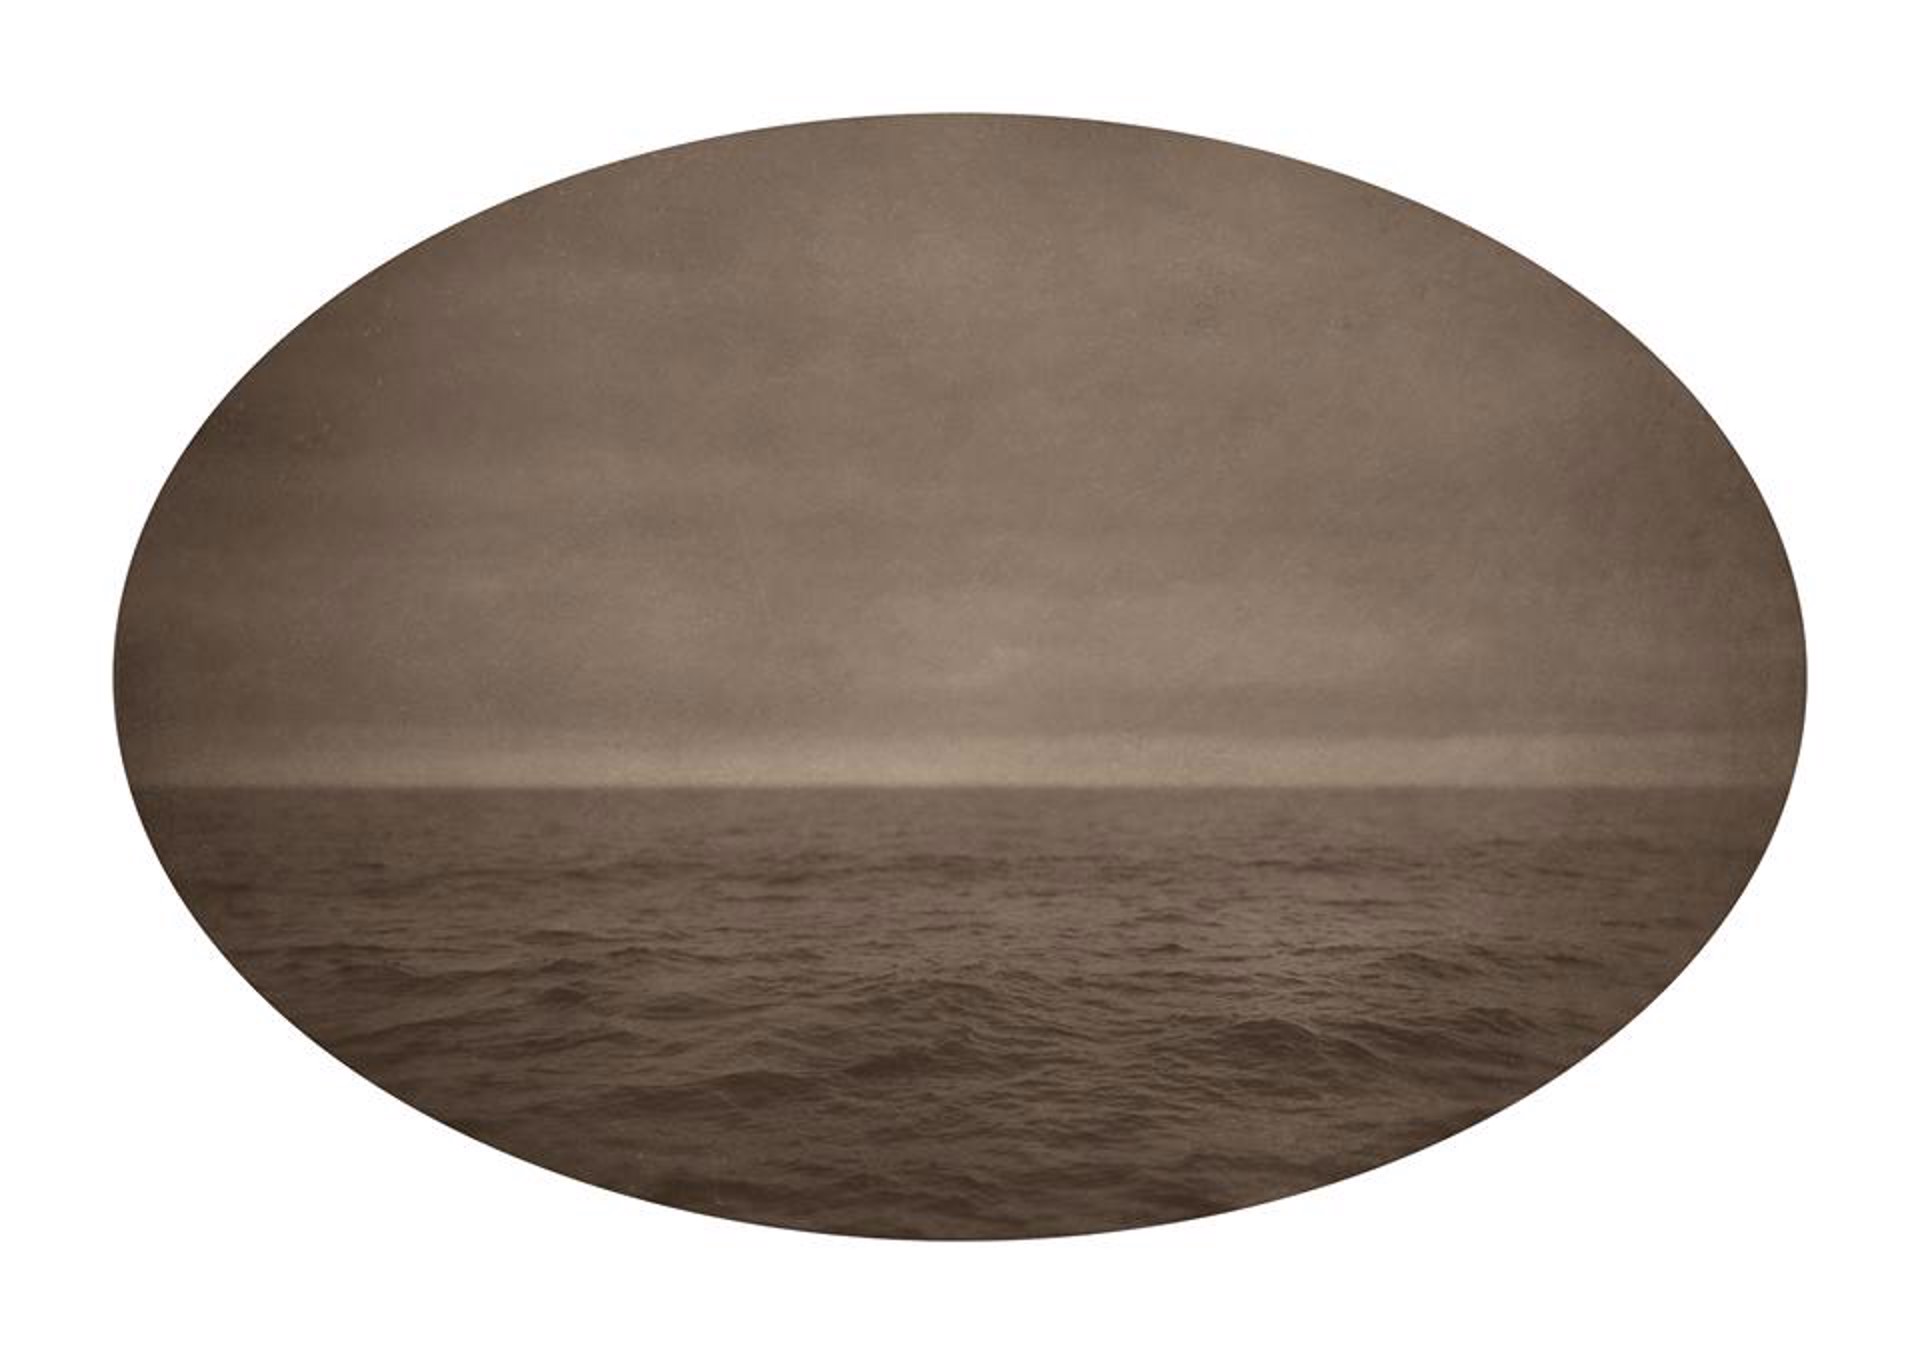 Calm Sea by Ted Kincaid